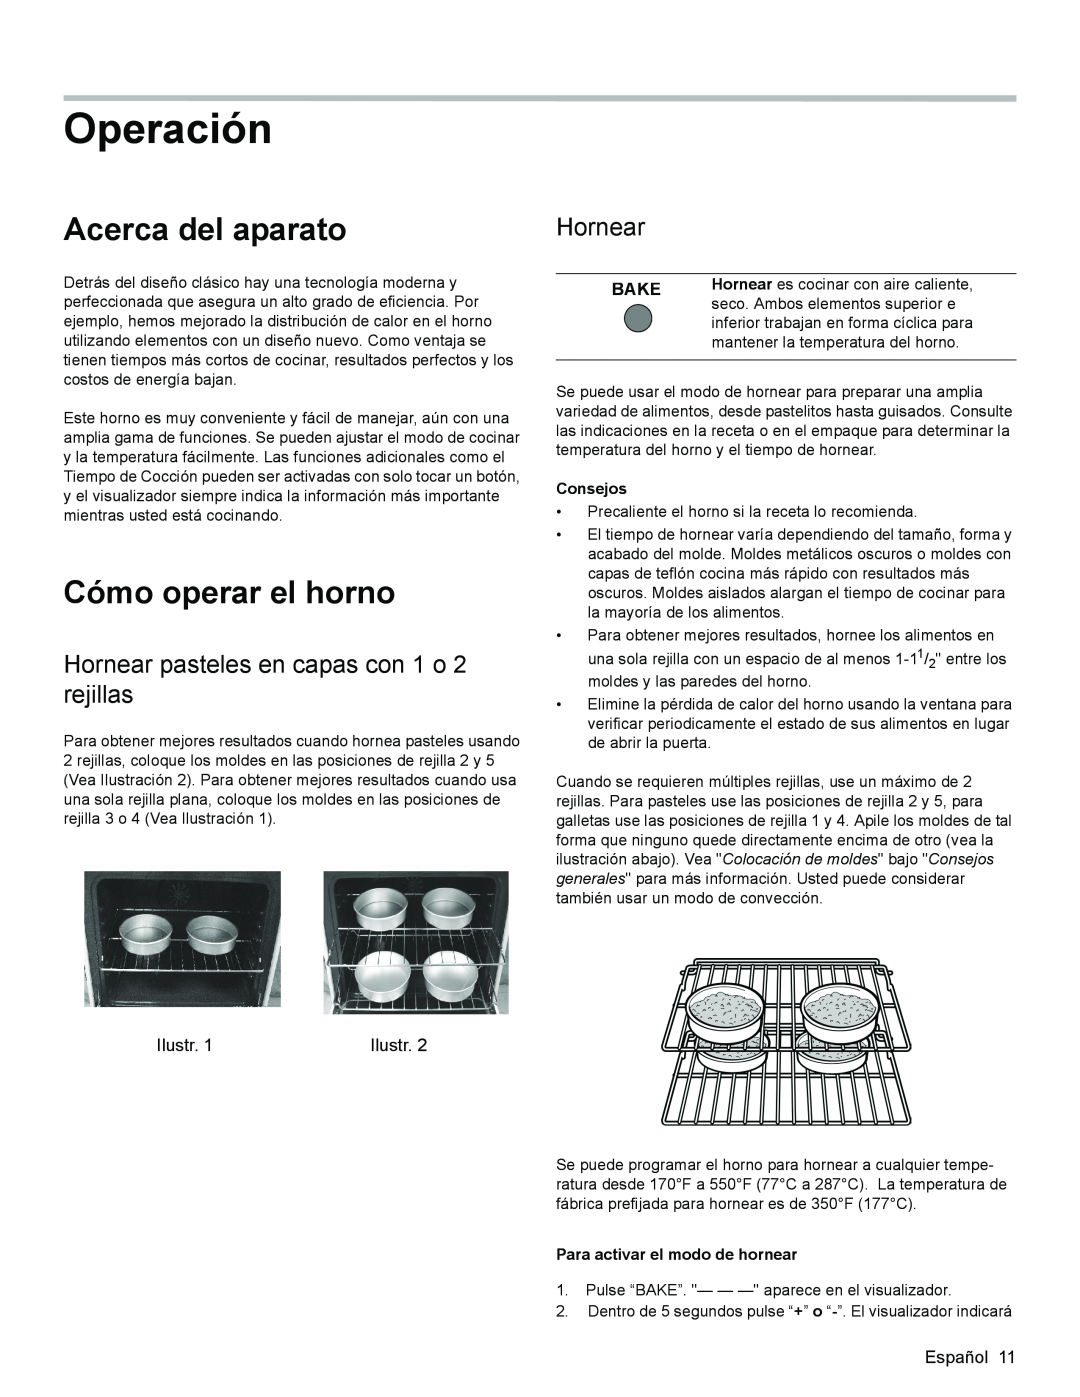 Bosch Appliances HES3053U manual Operación, Acerca del aparato, Cómo operar el horno, Hornear, Bake, Consejos 